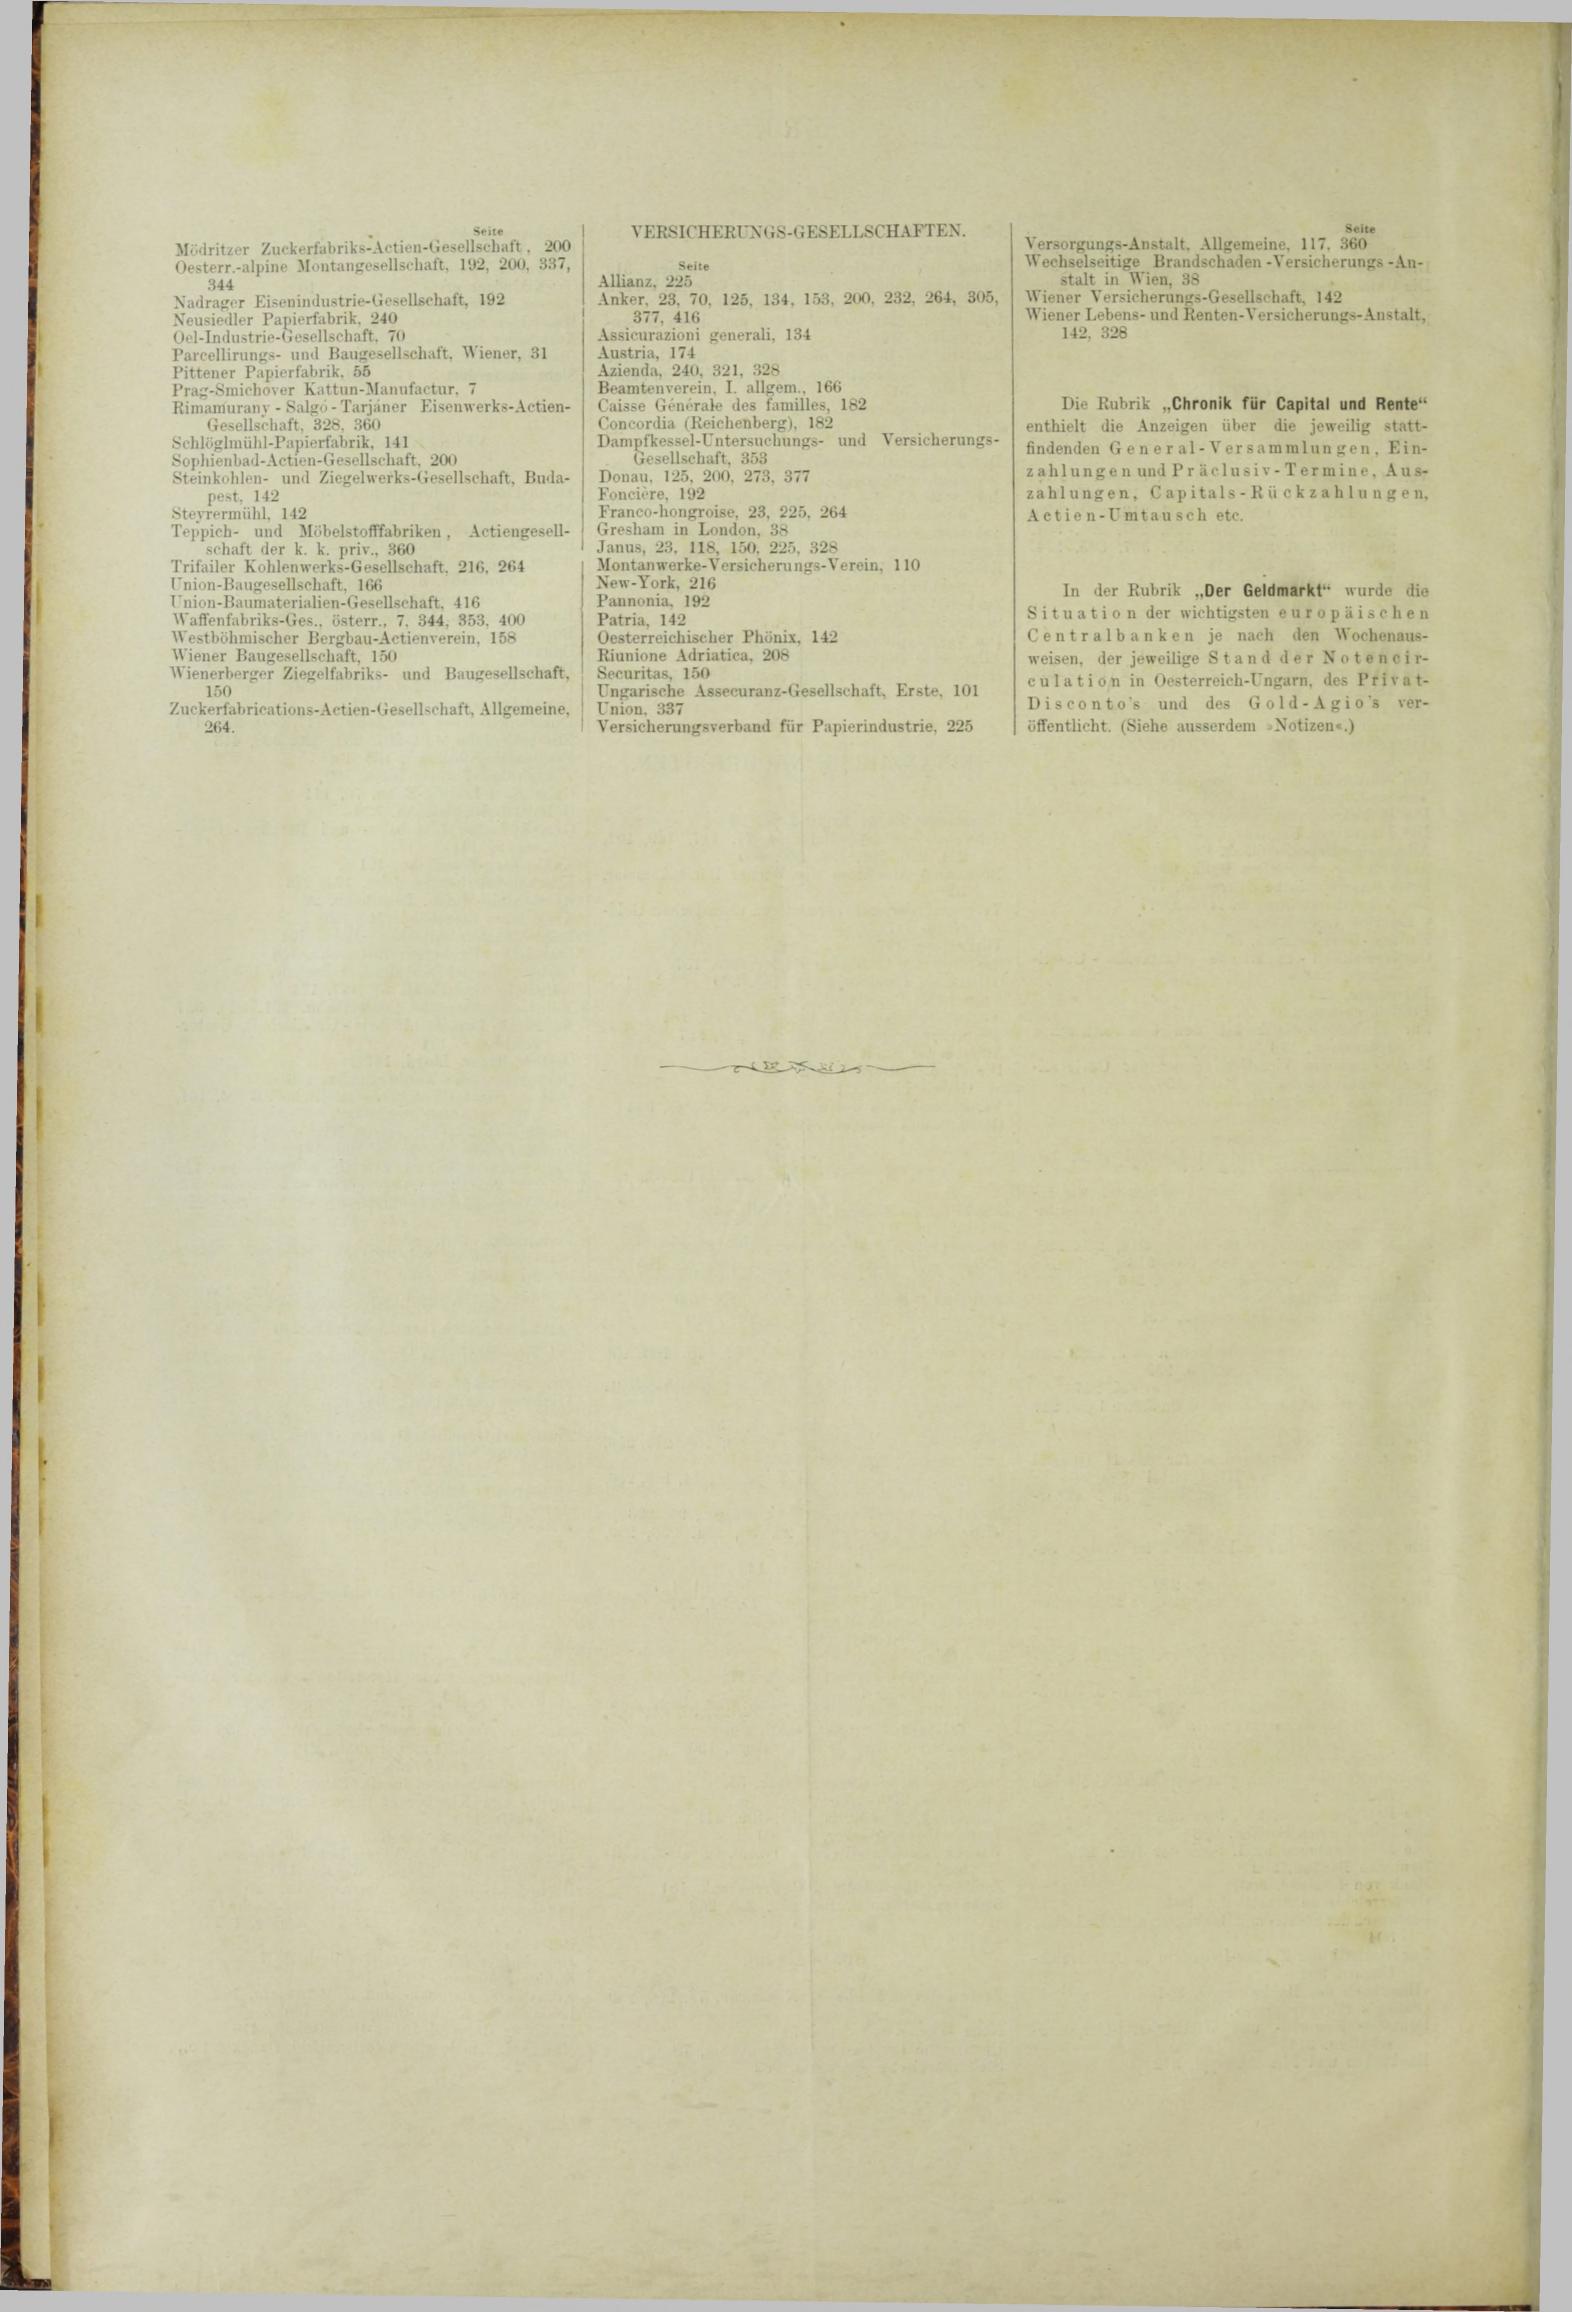 Der Tresor 19.07.1883 - Seite 12